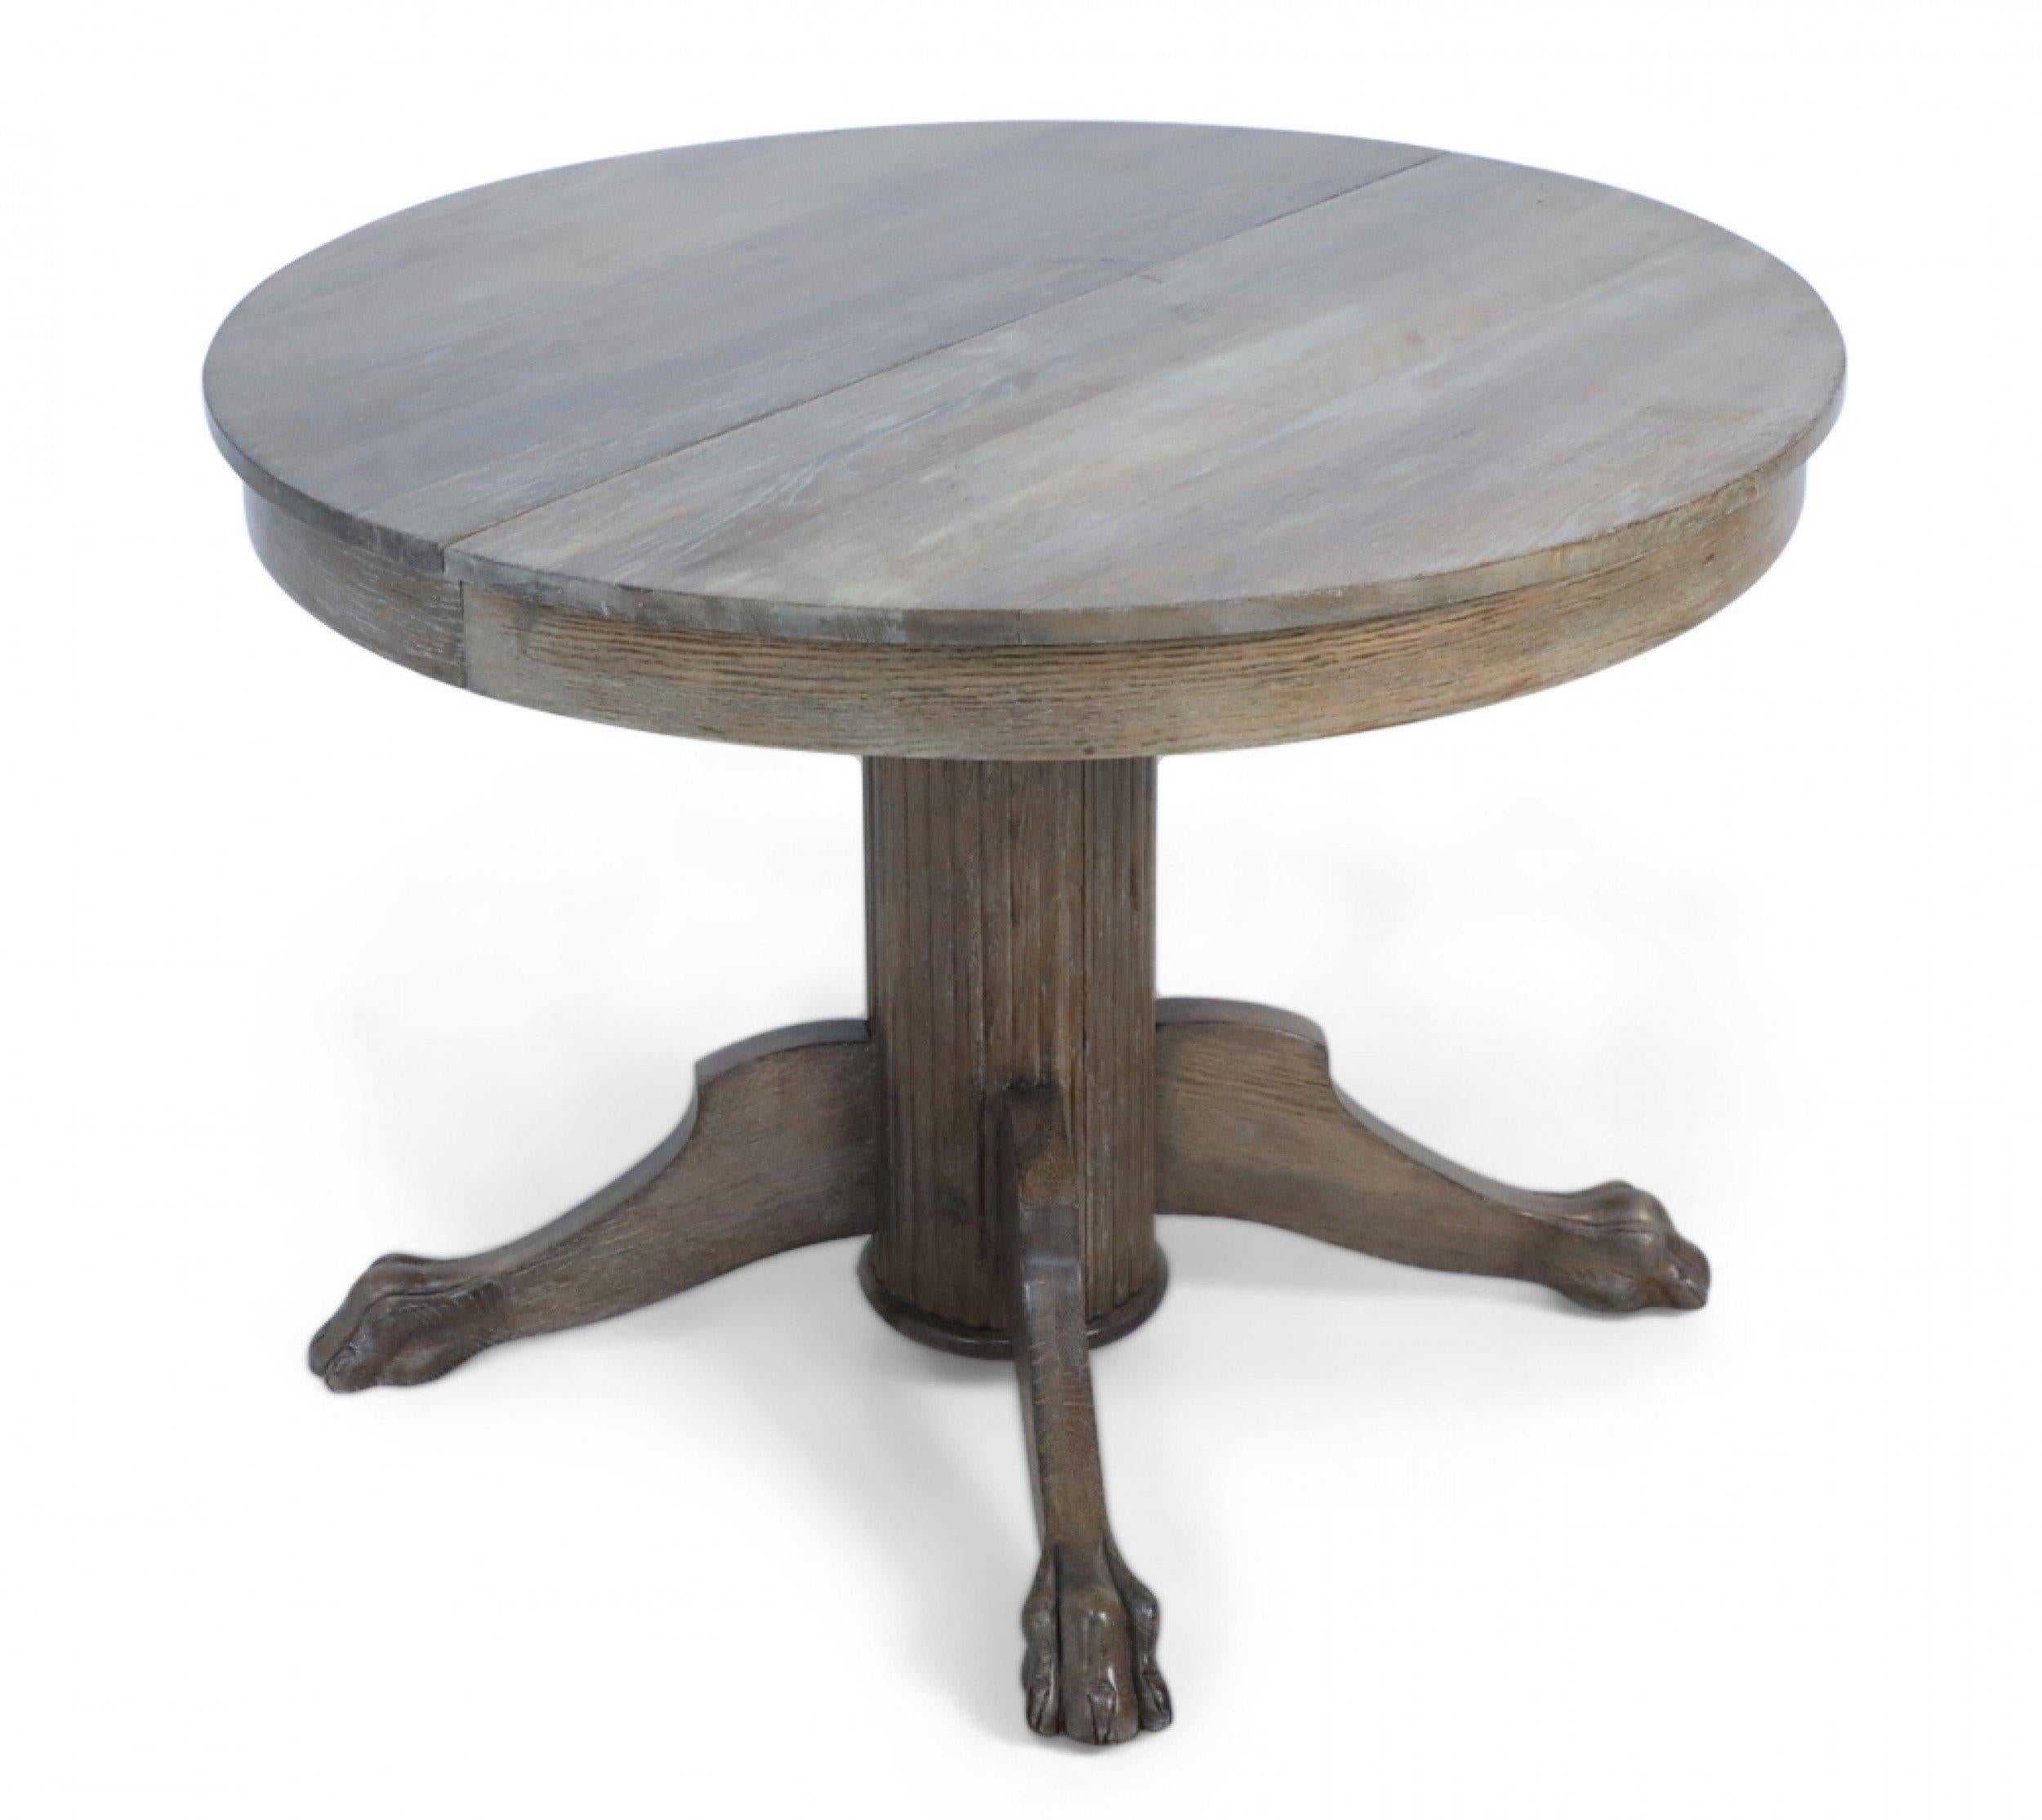 Englischer edwardianischer Esstisch aus cerused oak mit einer runden Platte, die auf einem kannelierten Sockel mit drei Klauenfüßen ruht. (zwei 23,5 